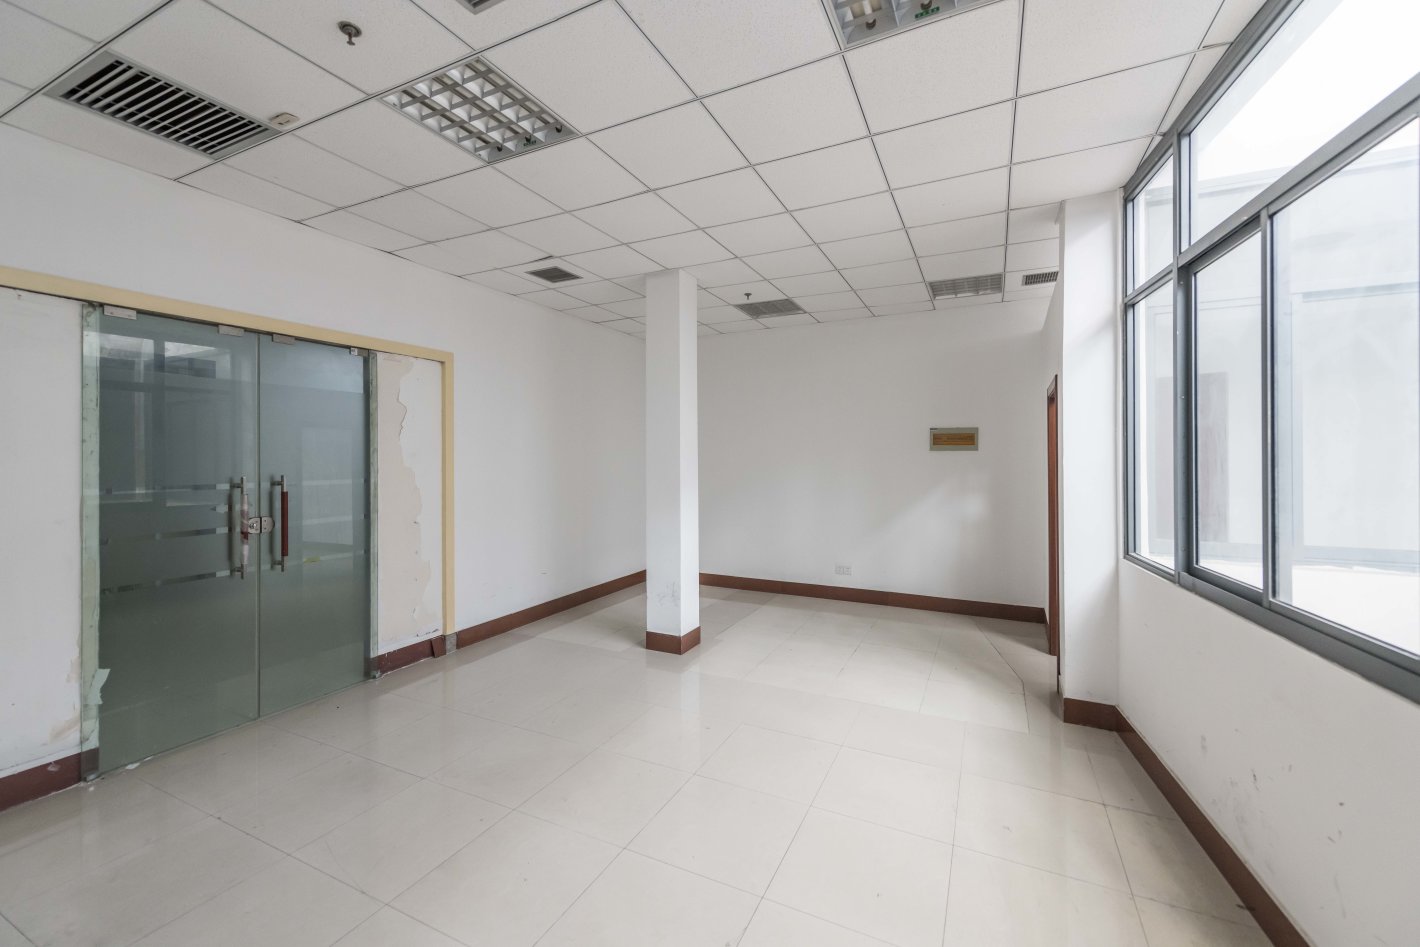 恒大长青坊创意园580平米办公室出租-租金价格3.04元/m²/天